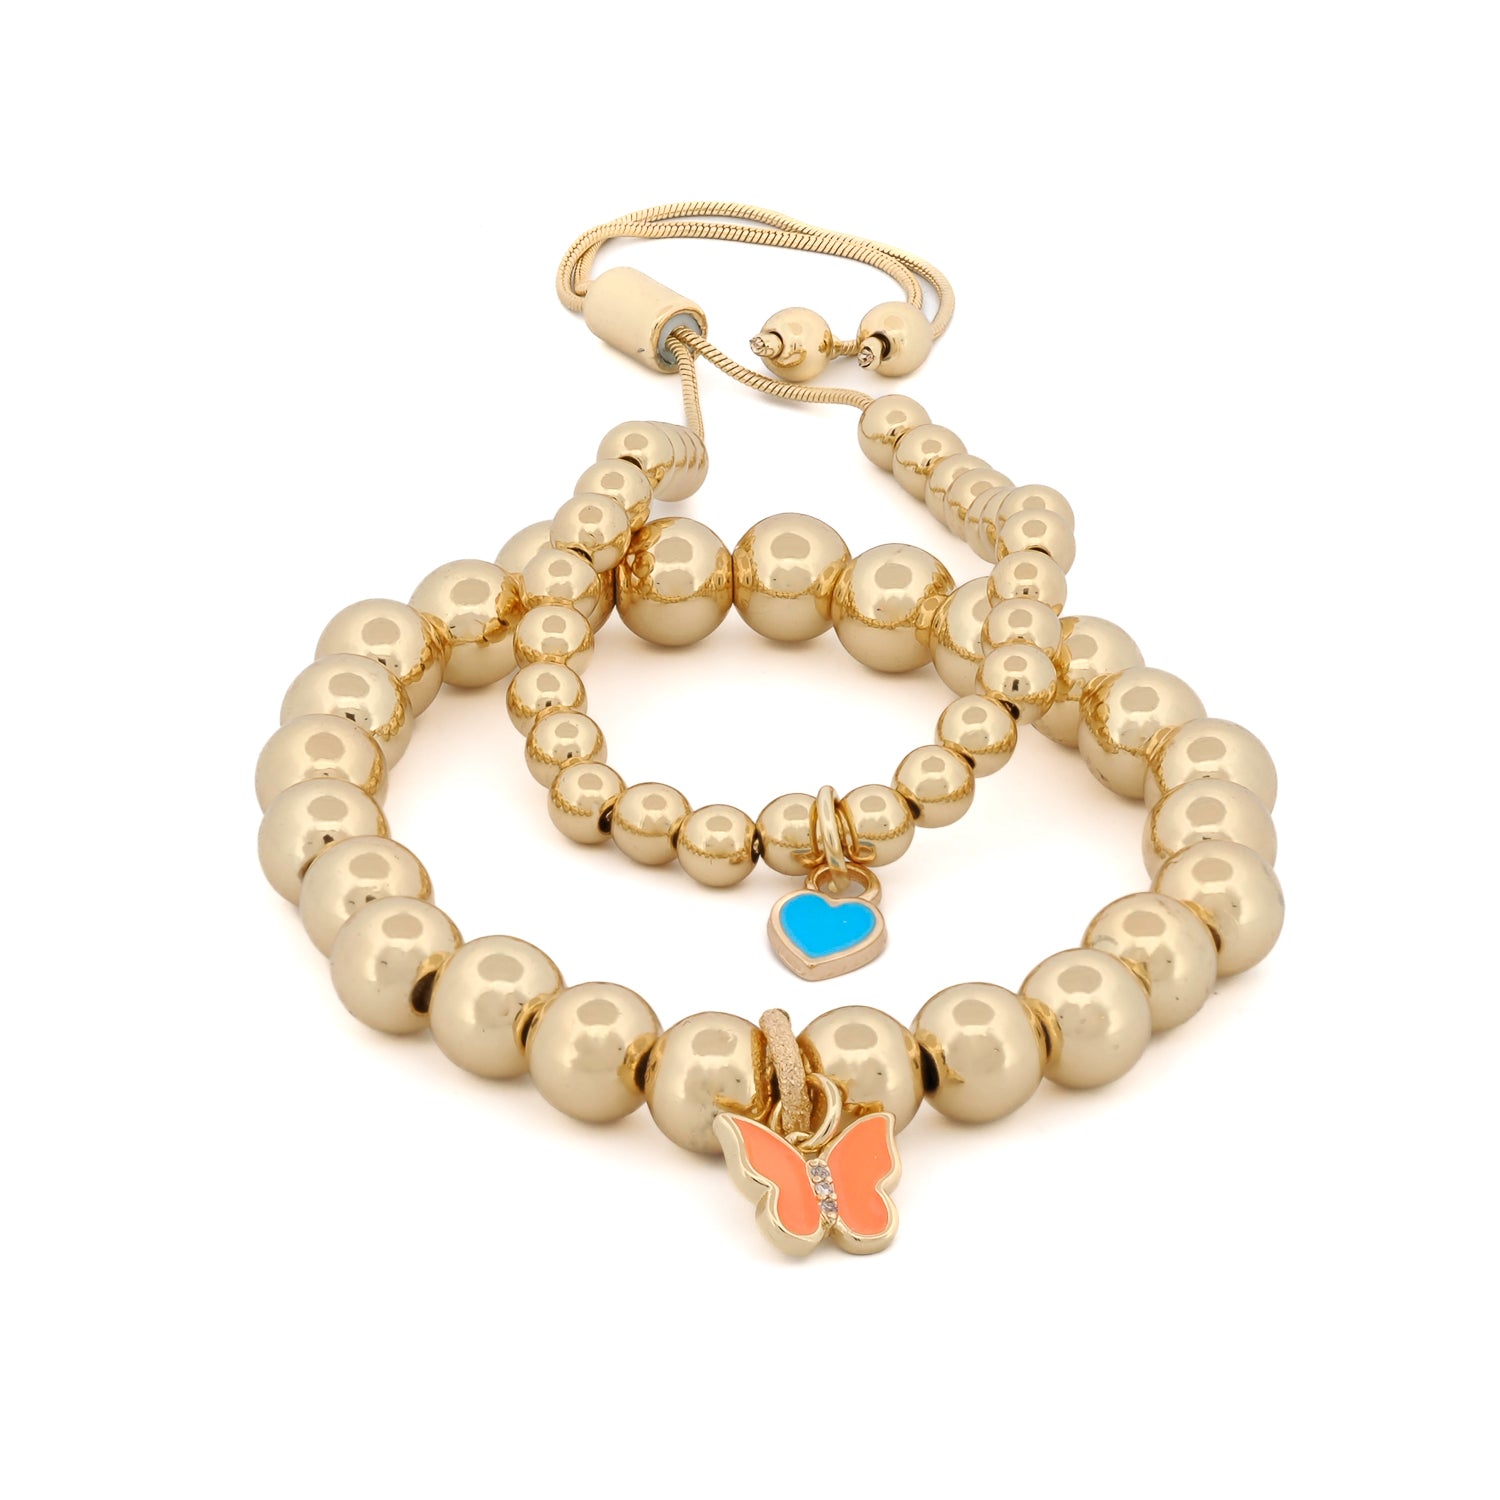 Joyful Orange Butterfly &amp; Blue Heart Charm Bracelet Set